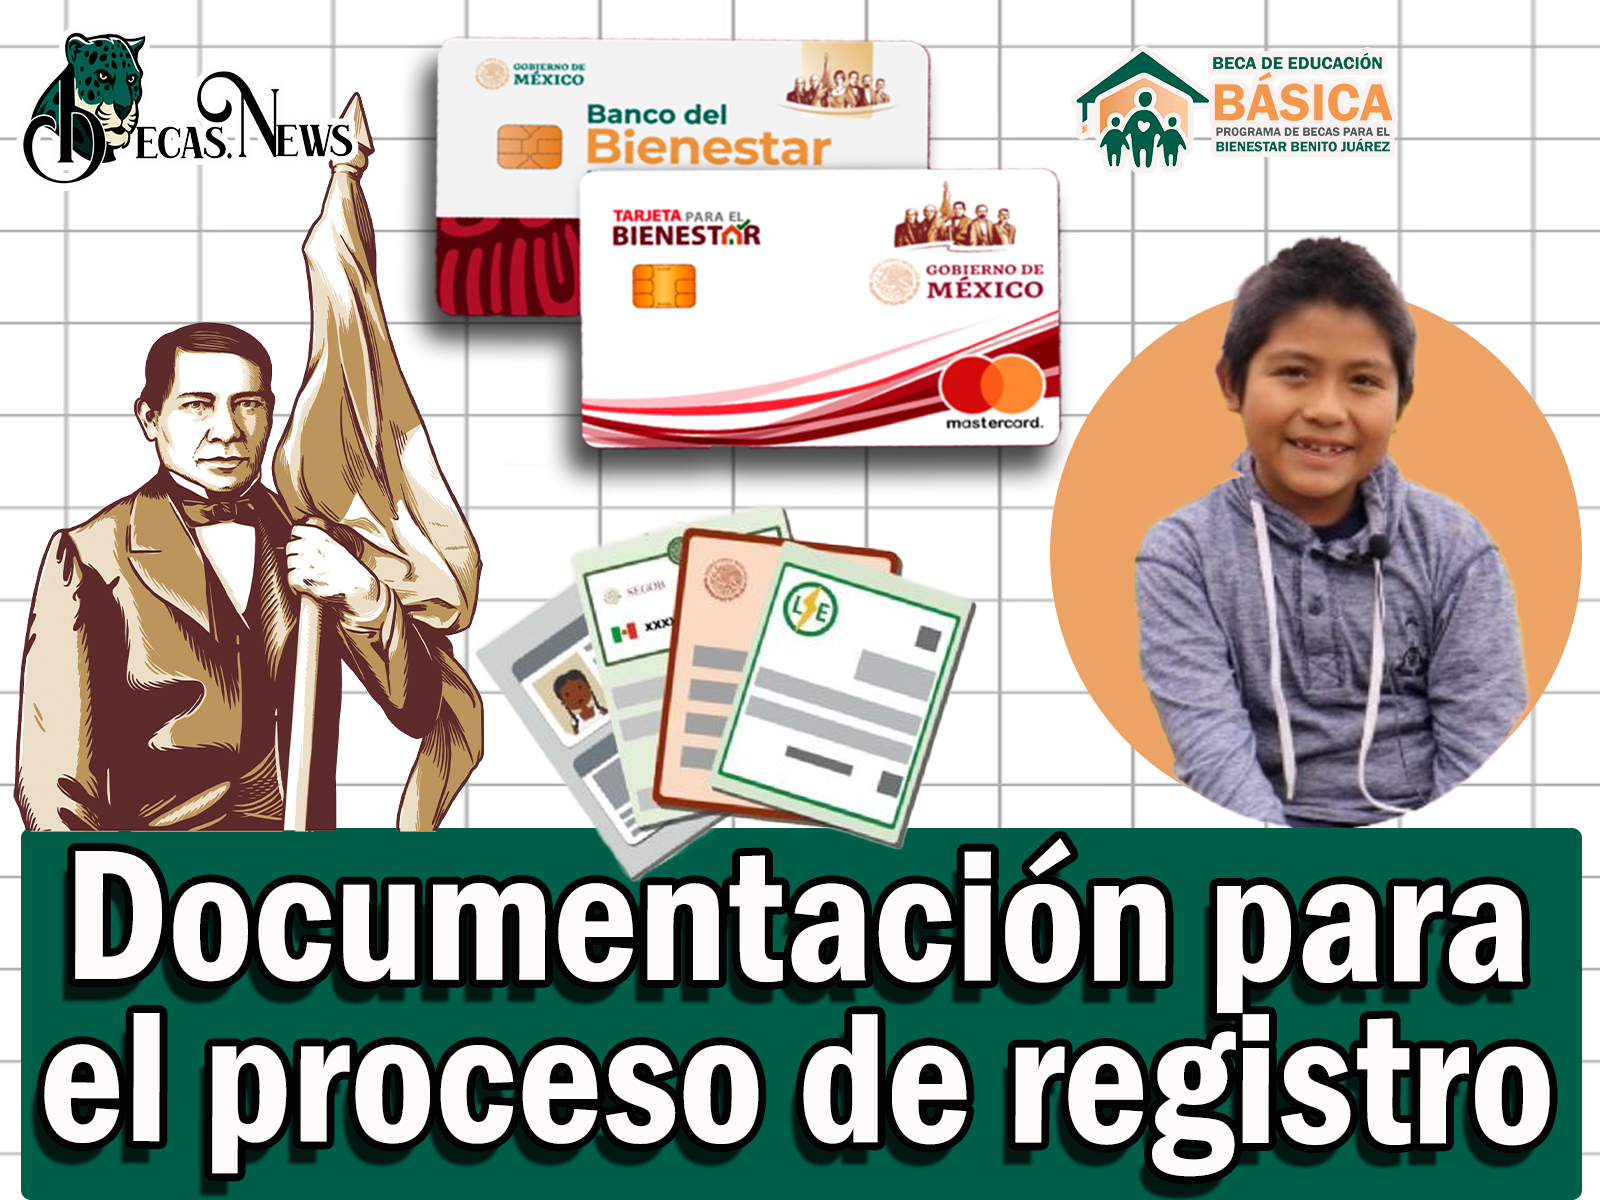 Becas Benito Juárez: Qué documentación necesitas para hacer el proceso de registro para la beca de nivel básico